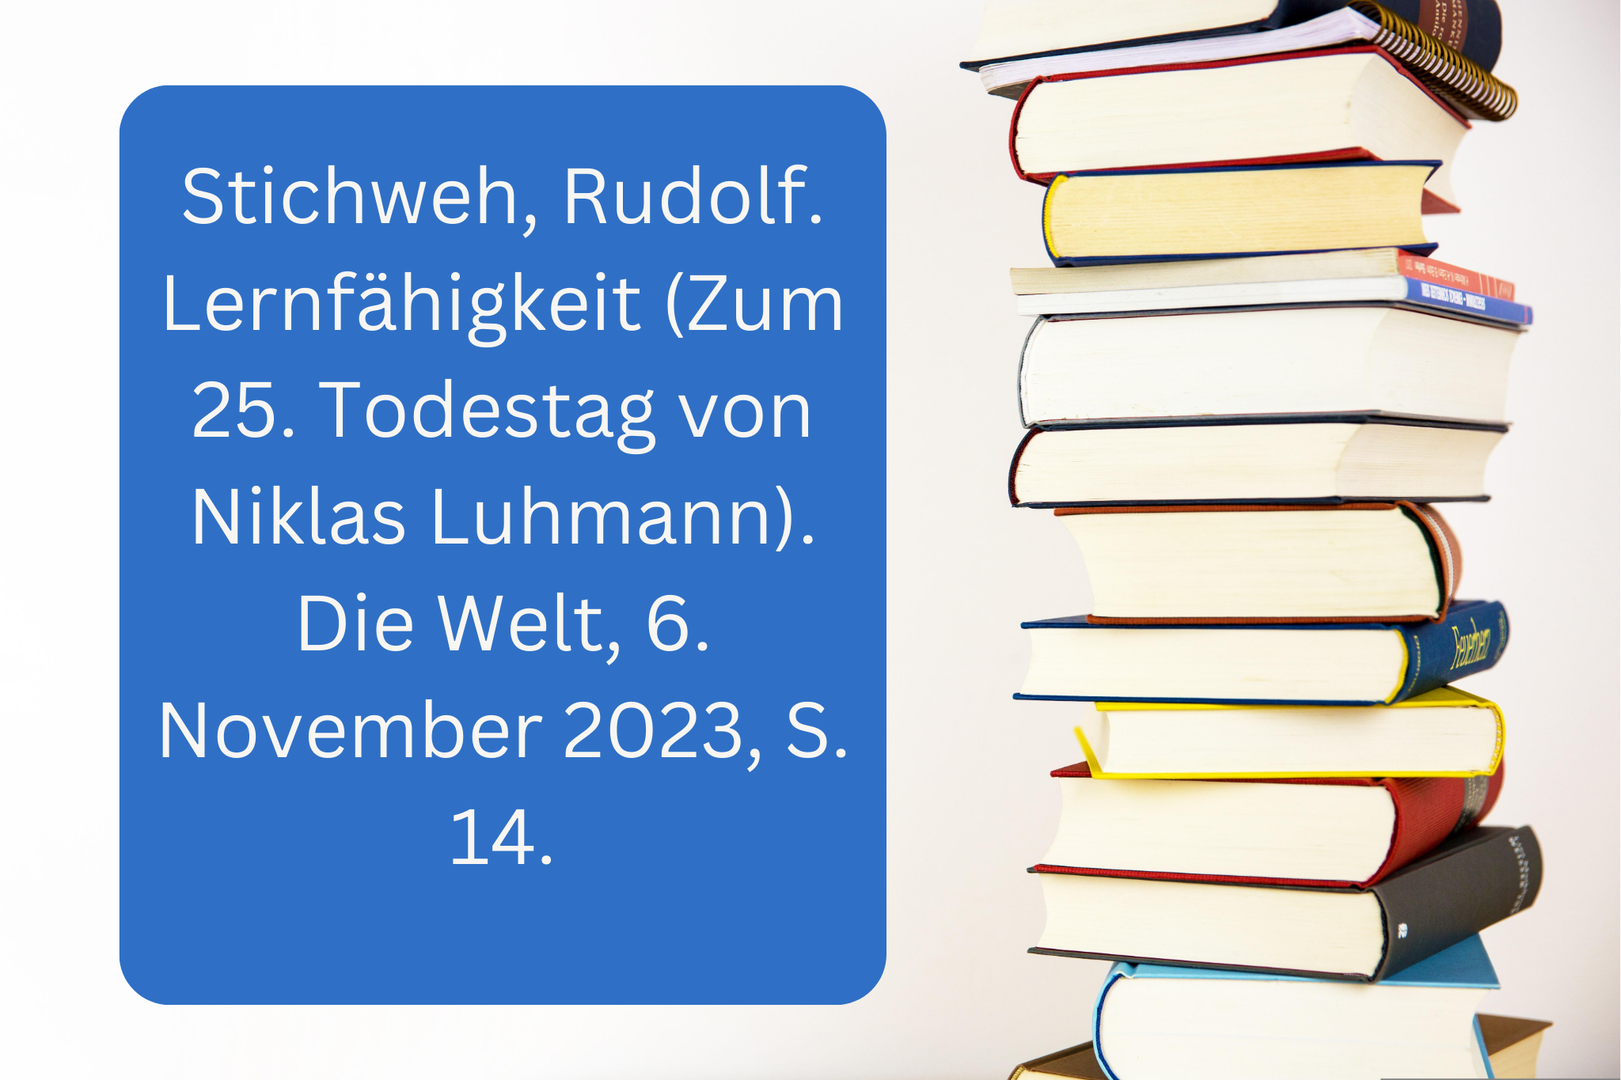 Stichweh, Rudolf. Lernfähigkeit (Zum 25. Todestag von Niklas Luhmann). Die Welt, 6. November 2023, S. 14.